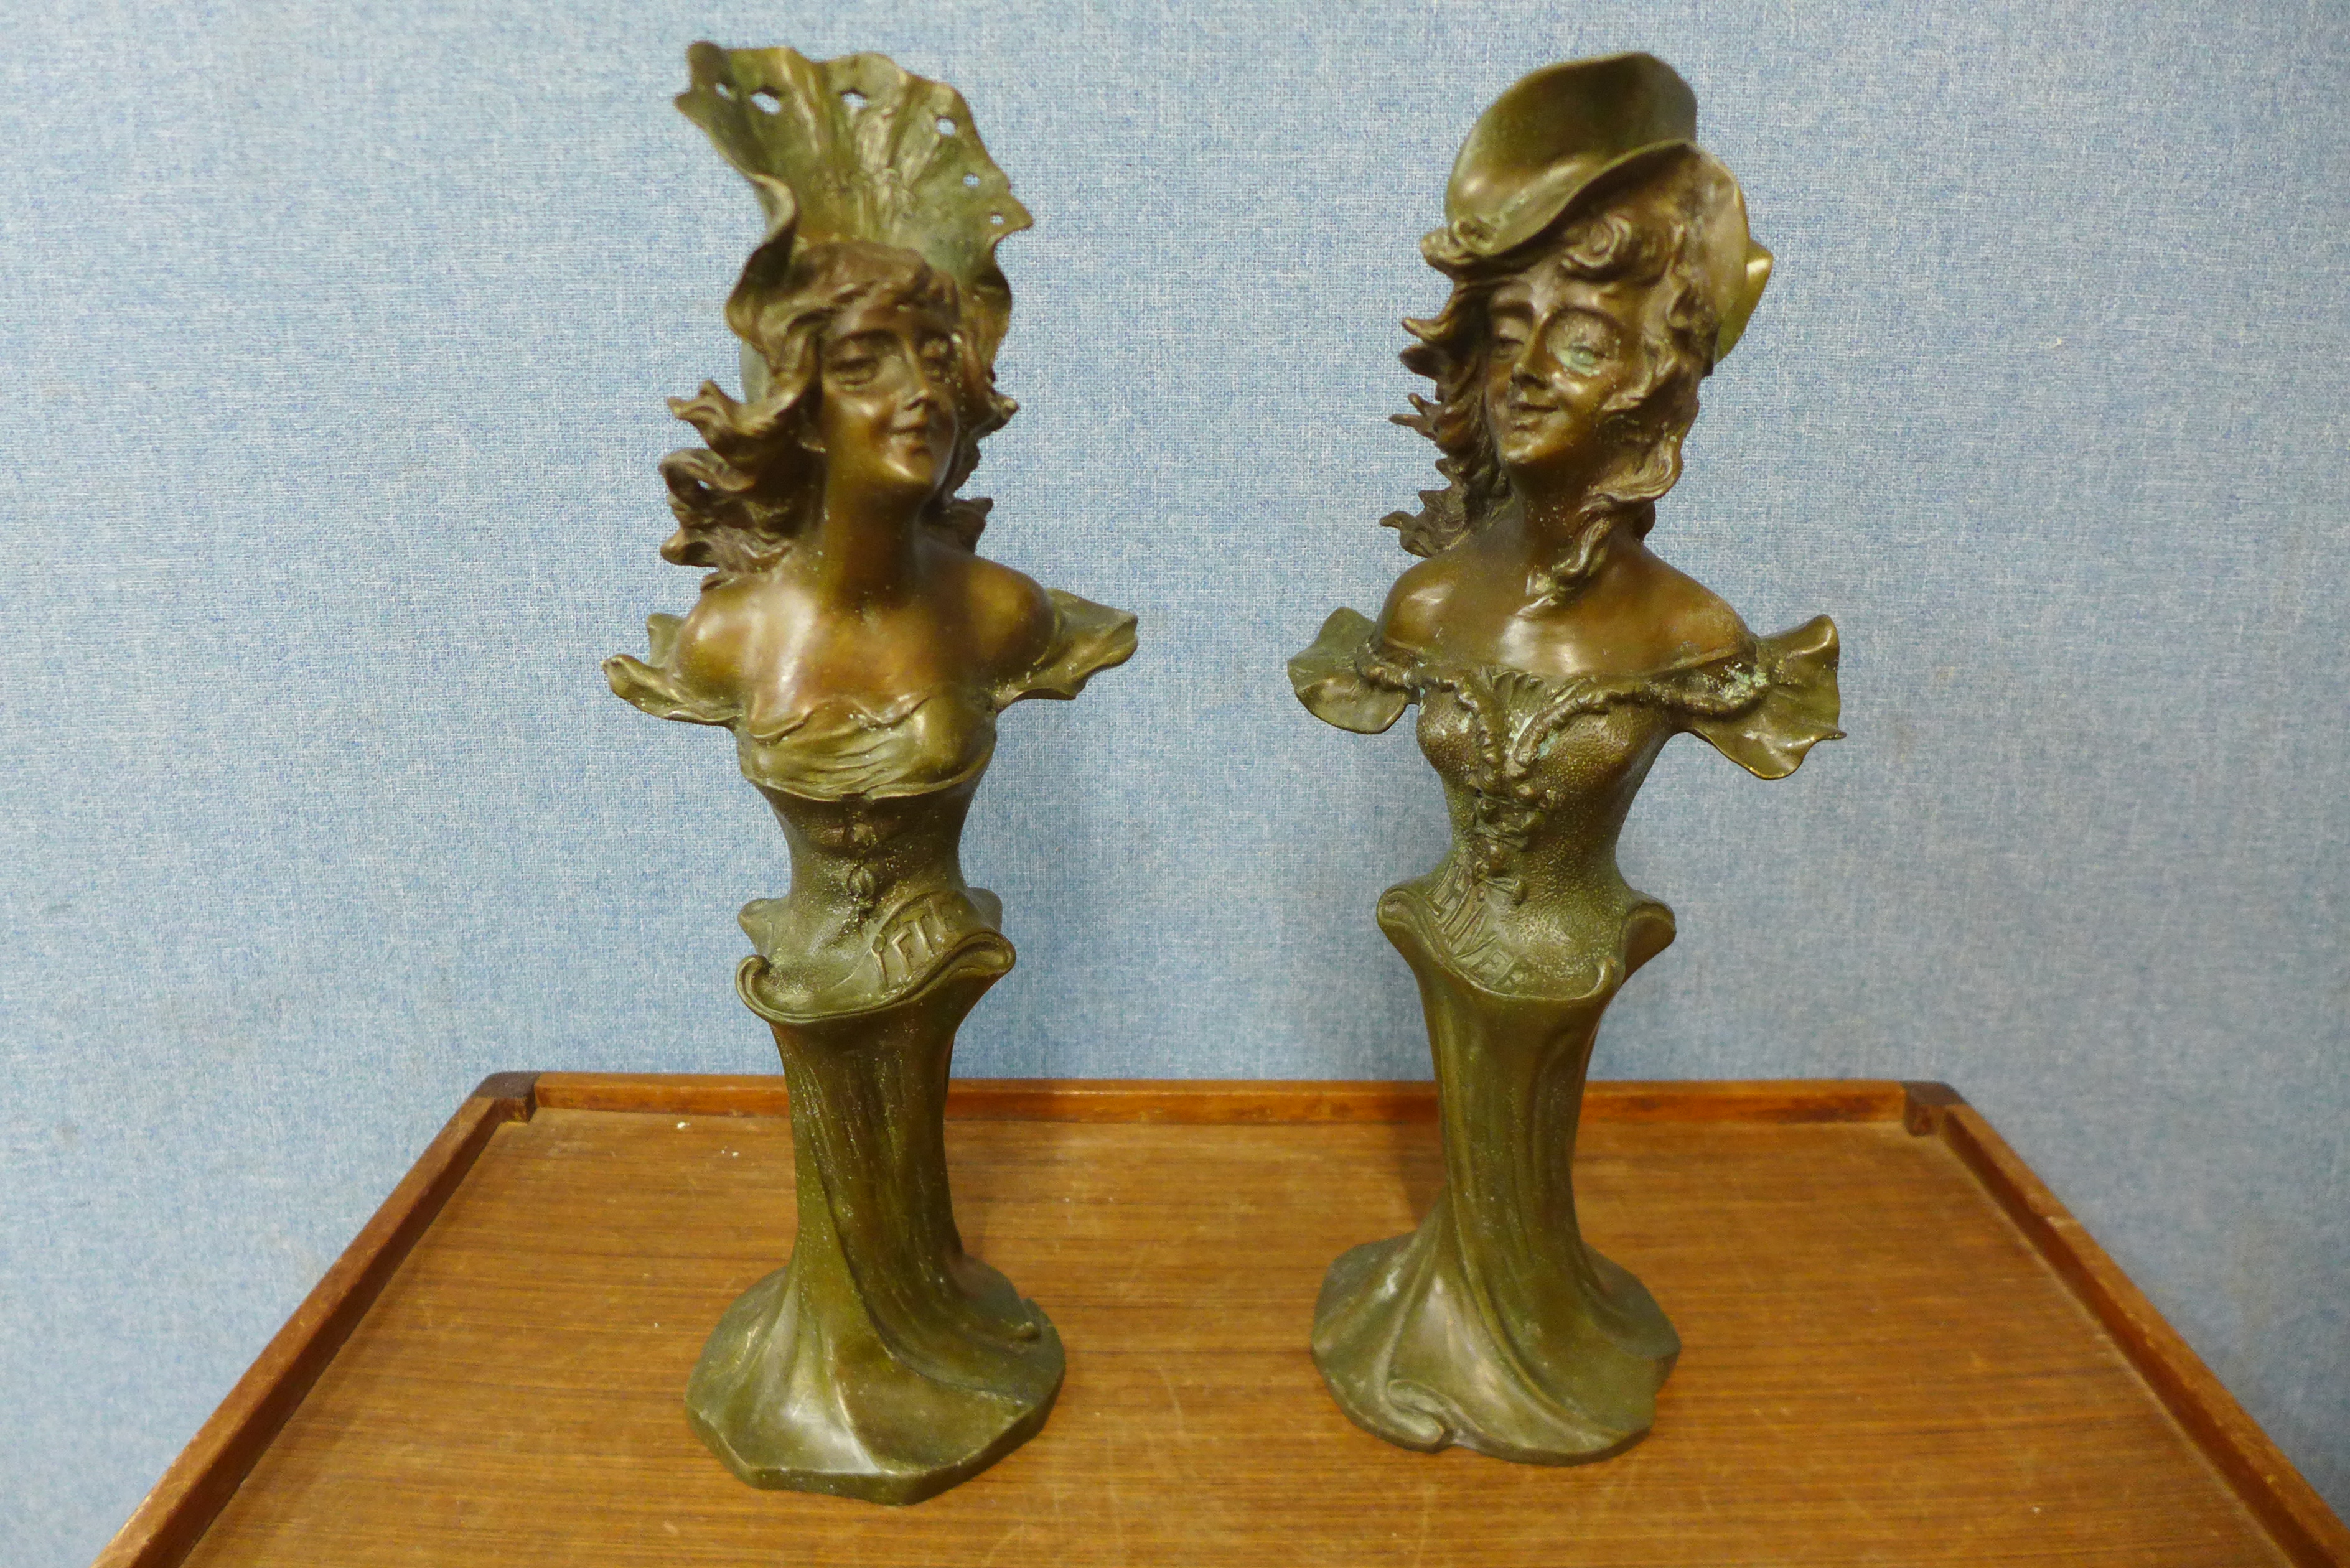 A pair of Art Nouveau style bronze busts, 45cms h